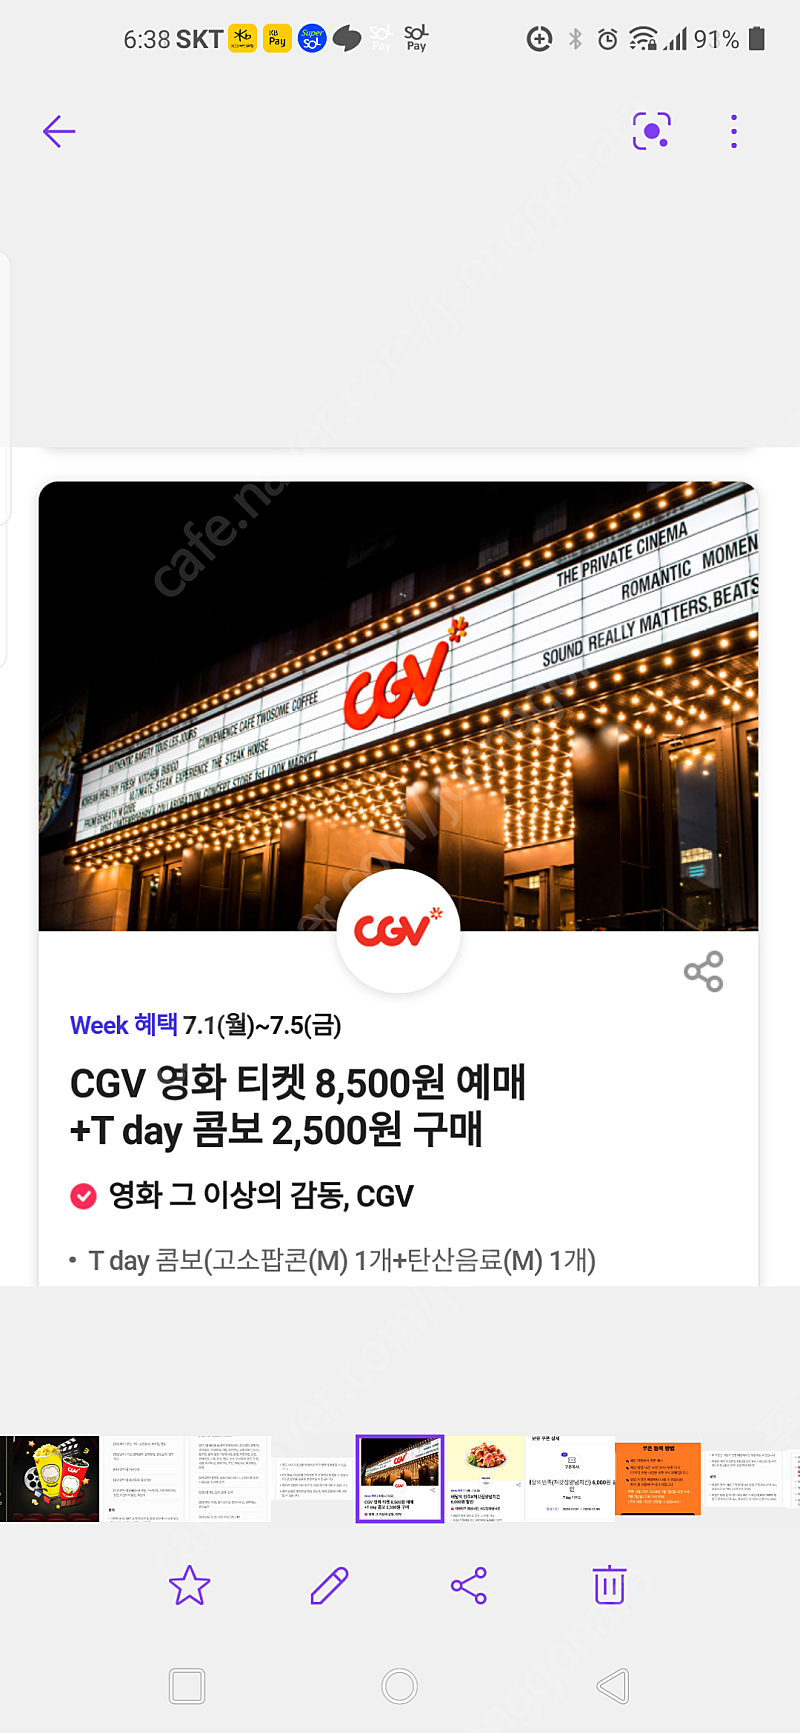 CGV 콤보 (팝콘+콜라)할인쿠폰